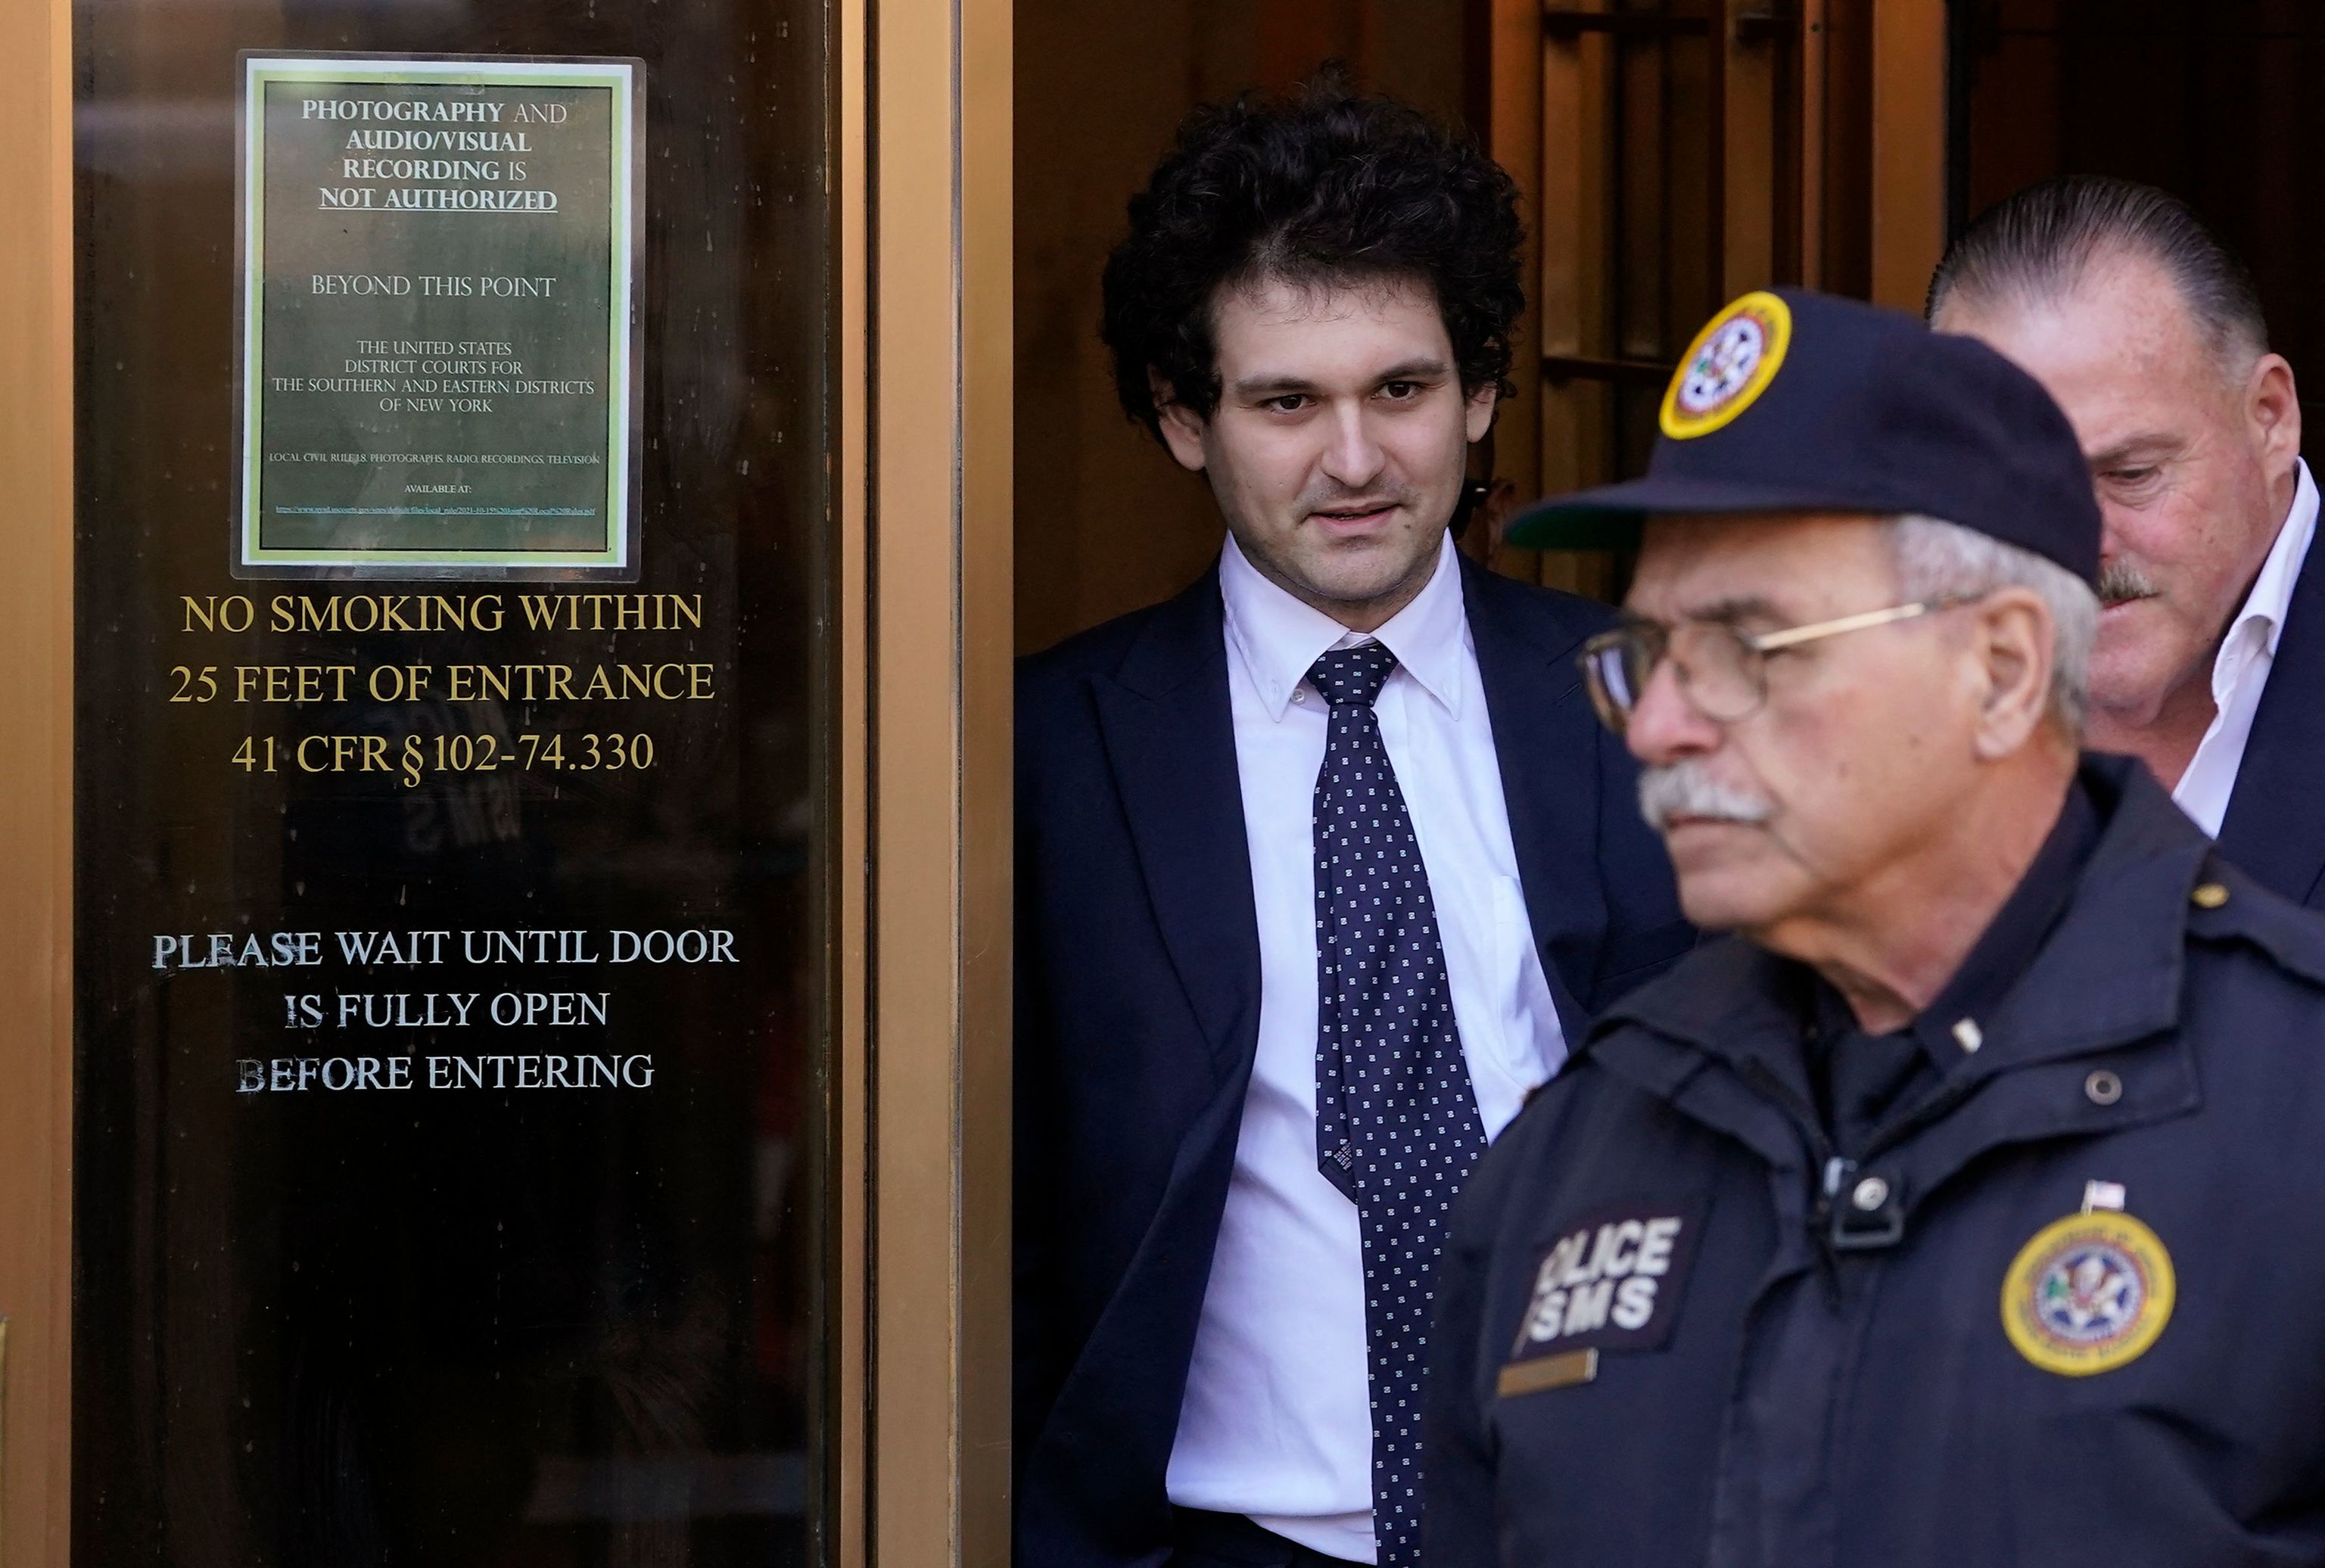 Condenan a 110 años de cárcel al ex magnate de las criptomonedas Bankman-Fried por fraude